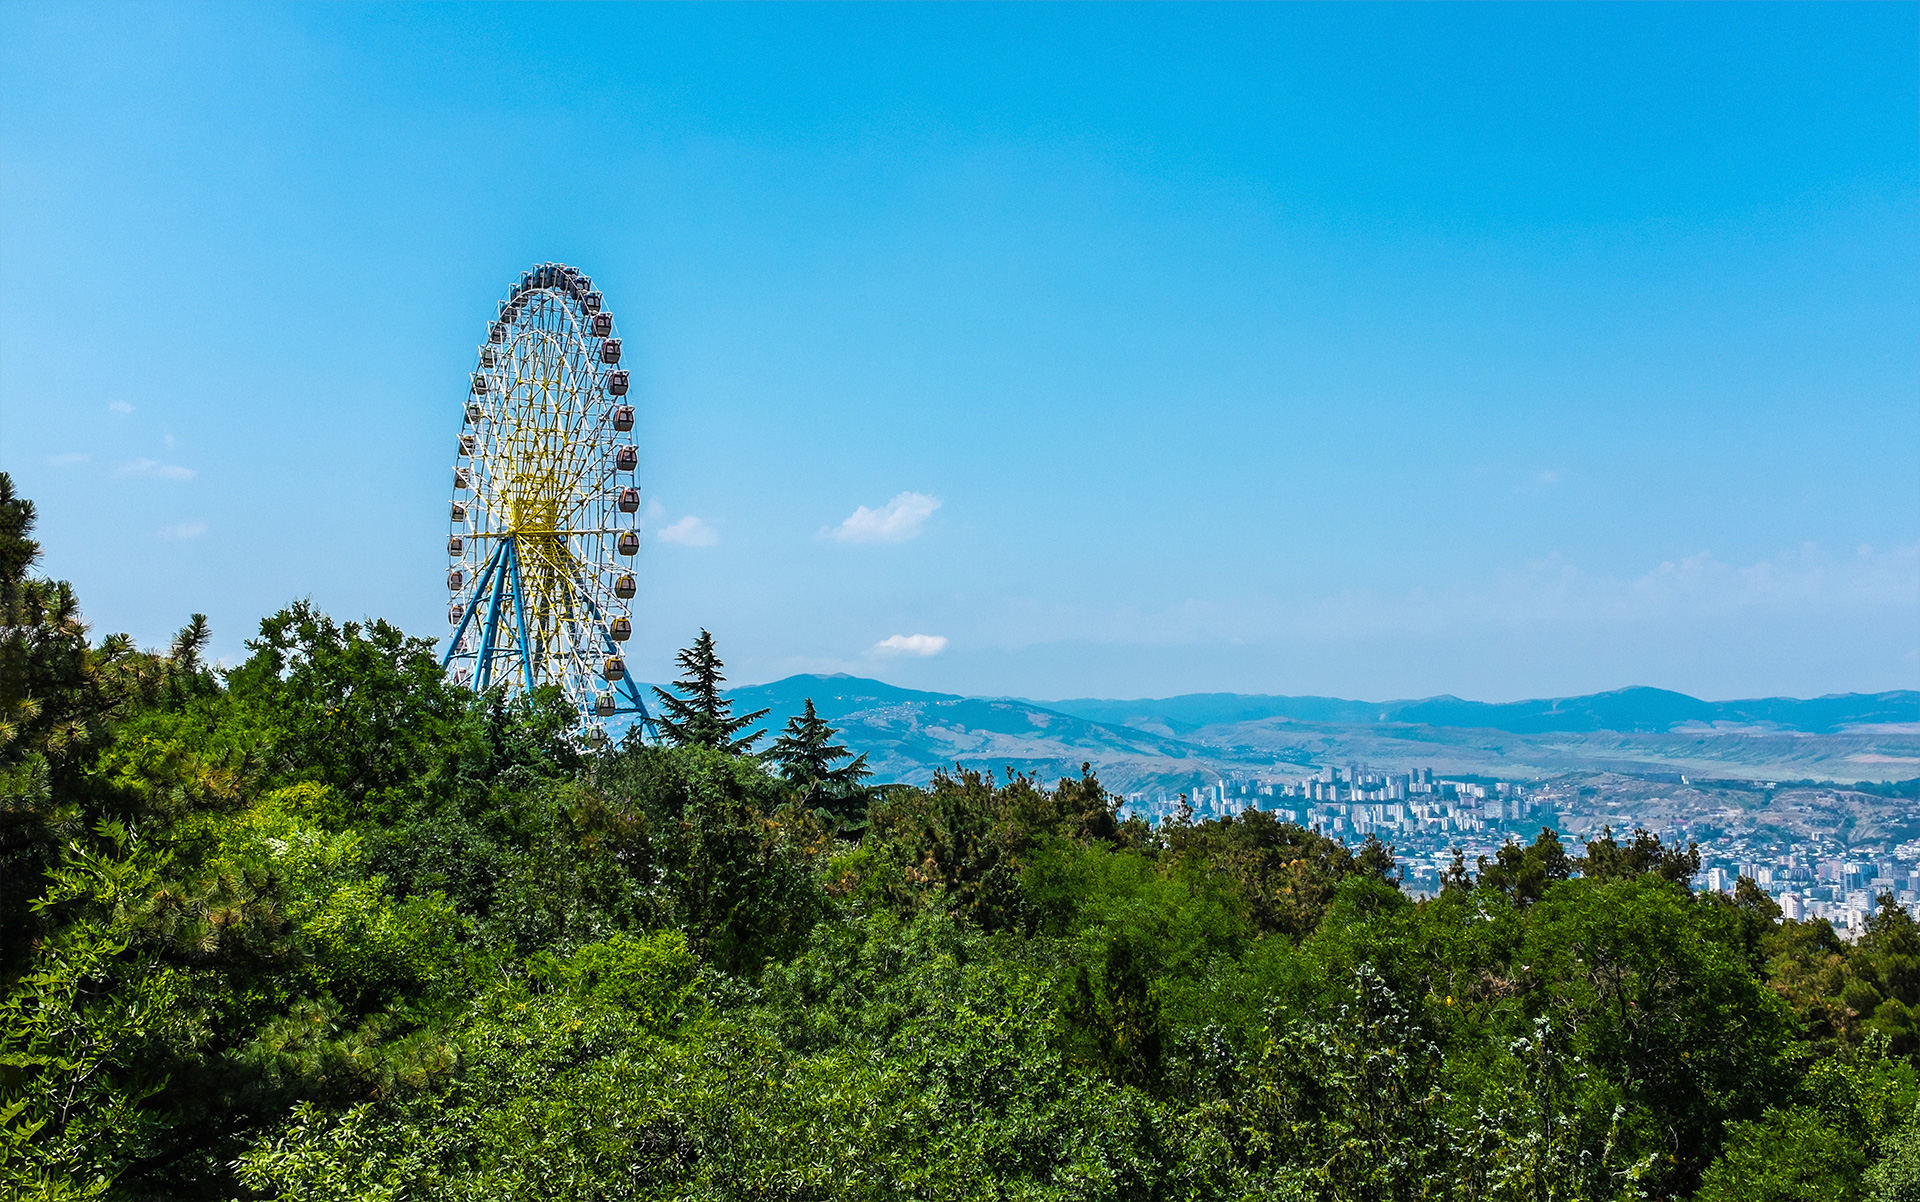 Ferris wheel in Mtatsminda Park in Tbilisi, Georgia.